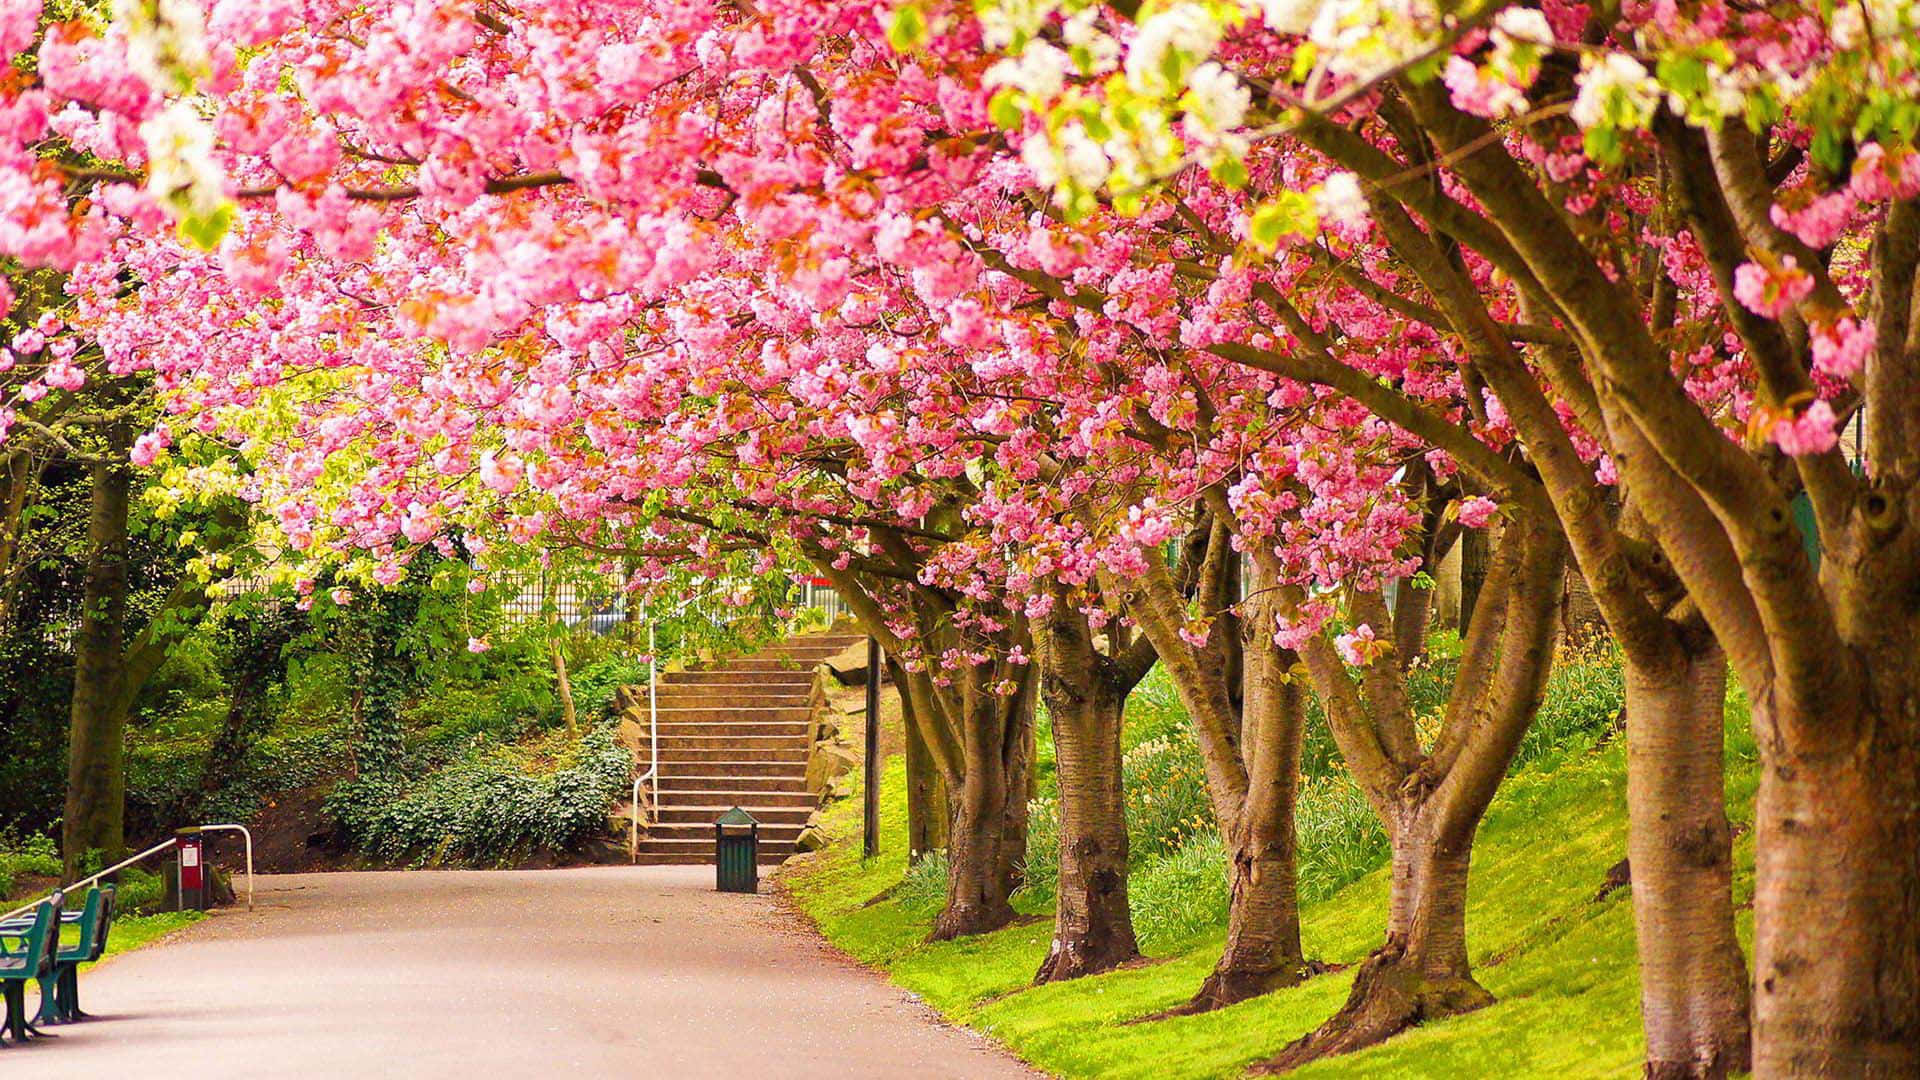 Radiant Cherry Blossom Tree in Full Bloom